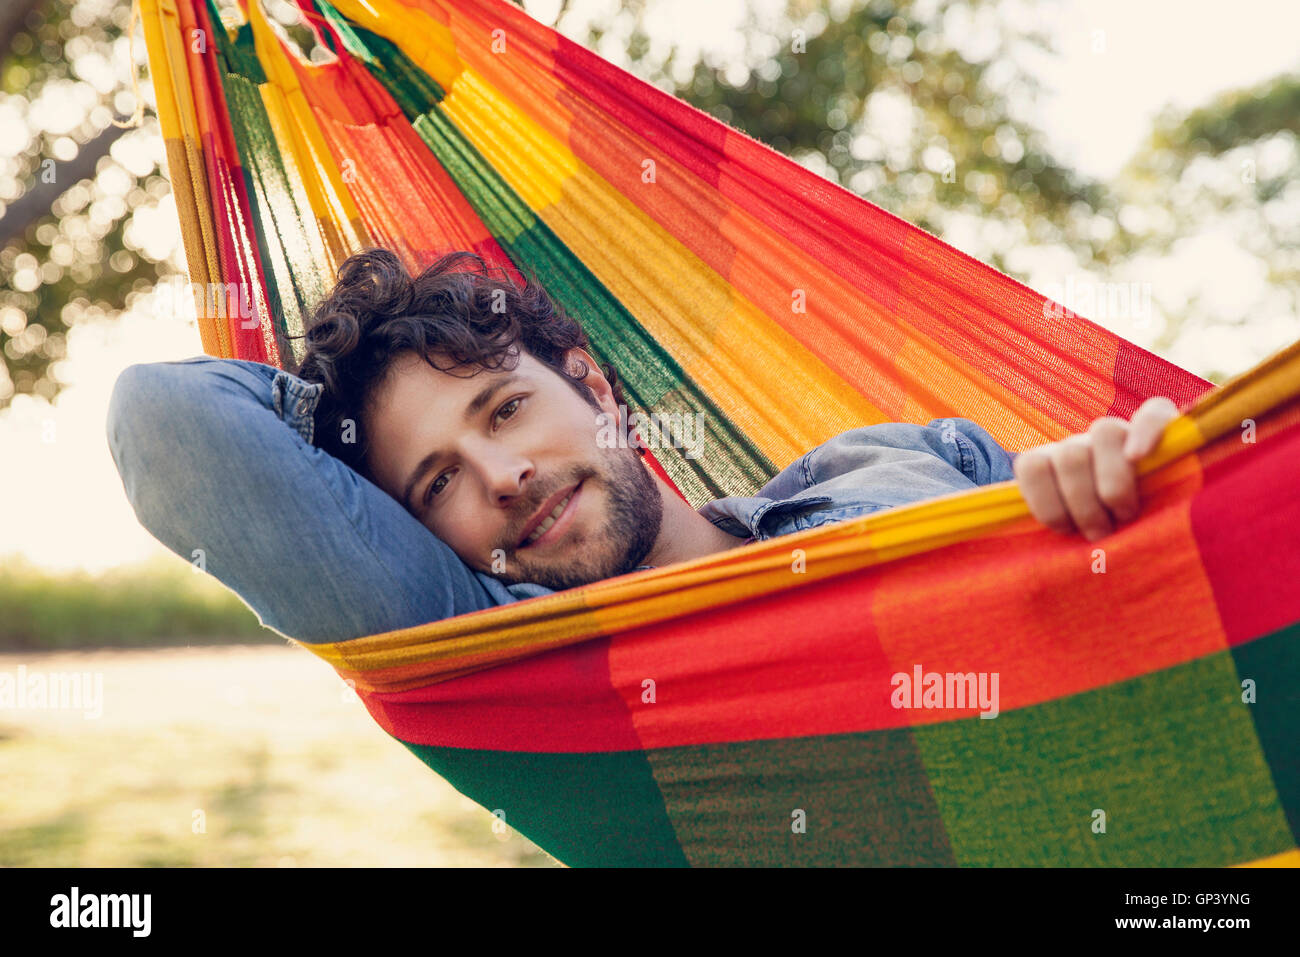 Man relaxing in hammock, portrait Stock Photo